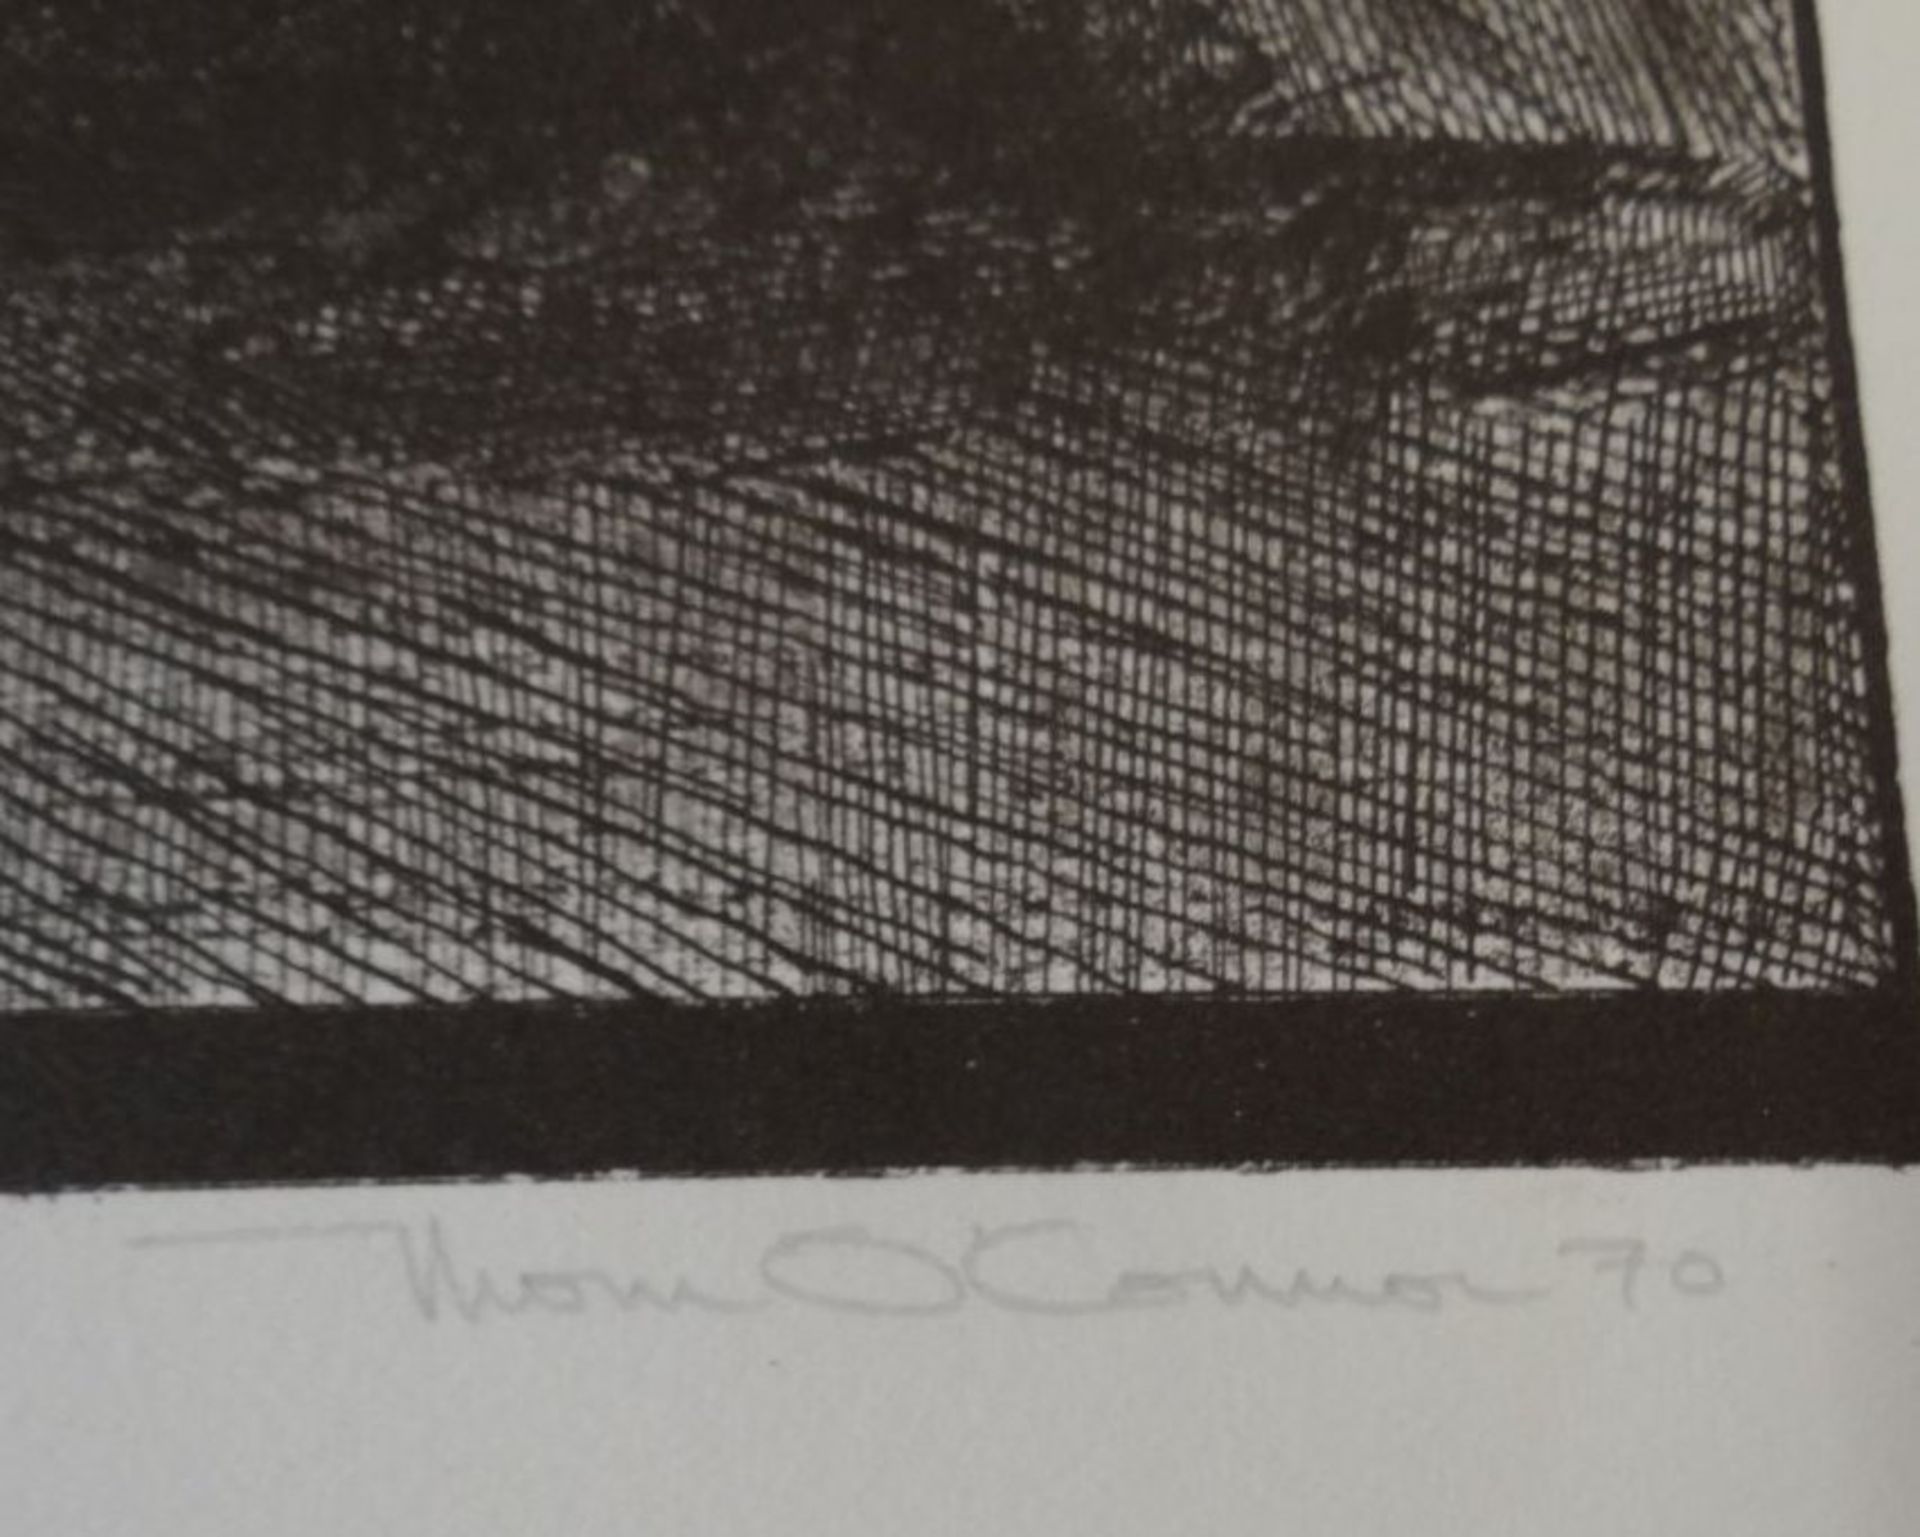 Thom. O'Connor, 1970 "Landschaft" Lithografie E.A proof, BG 55x45 cm - Image 4 of 4